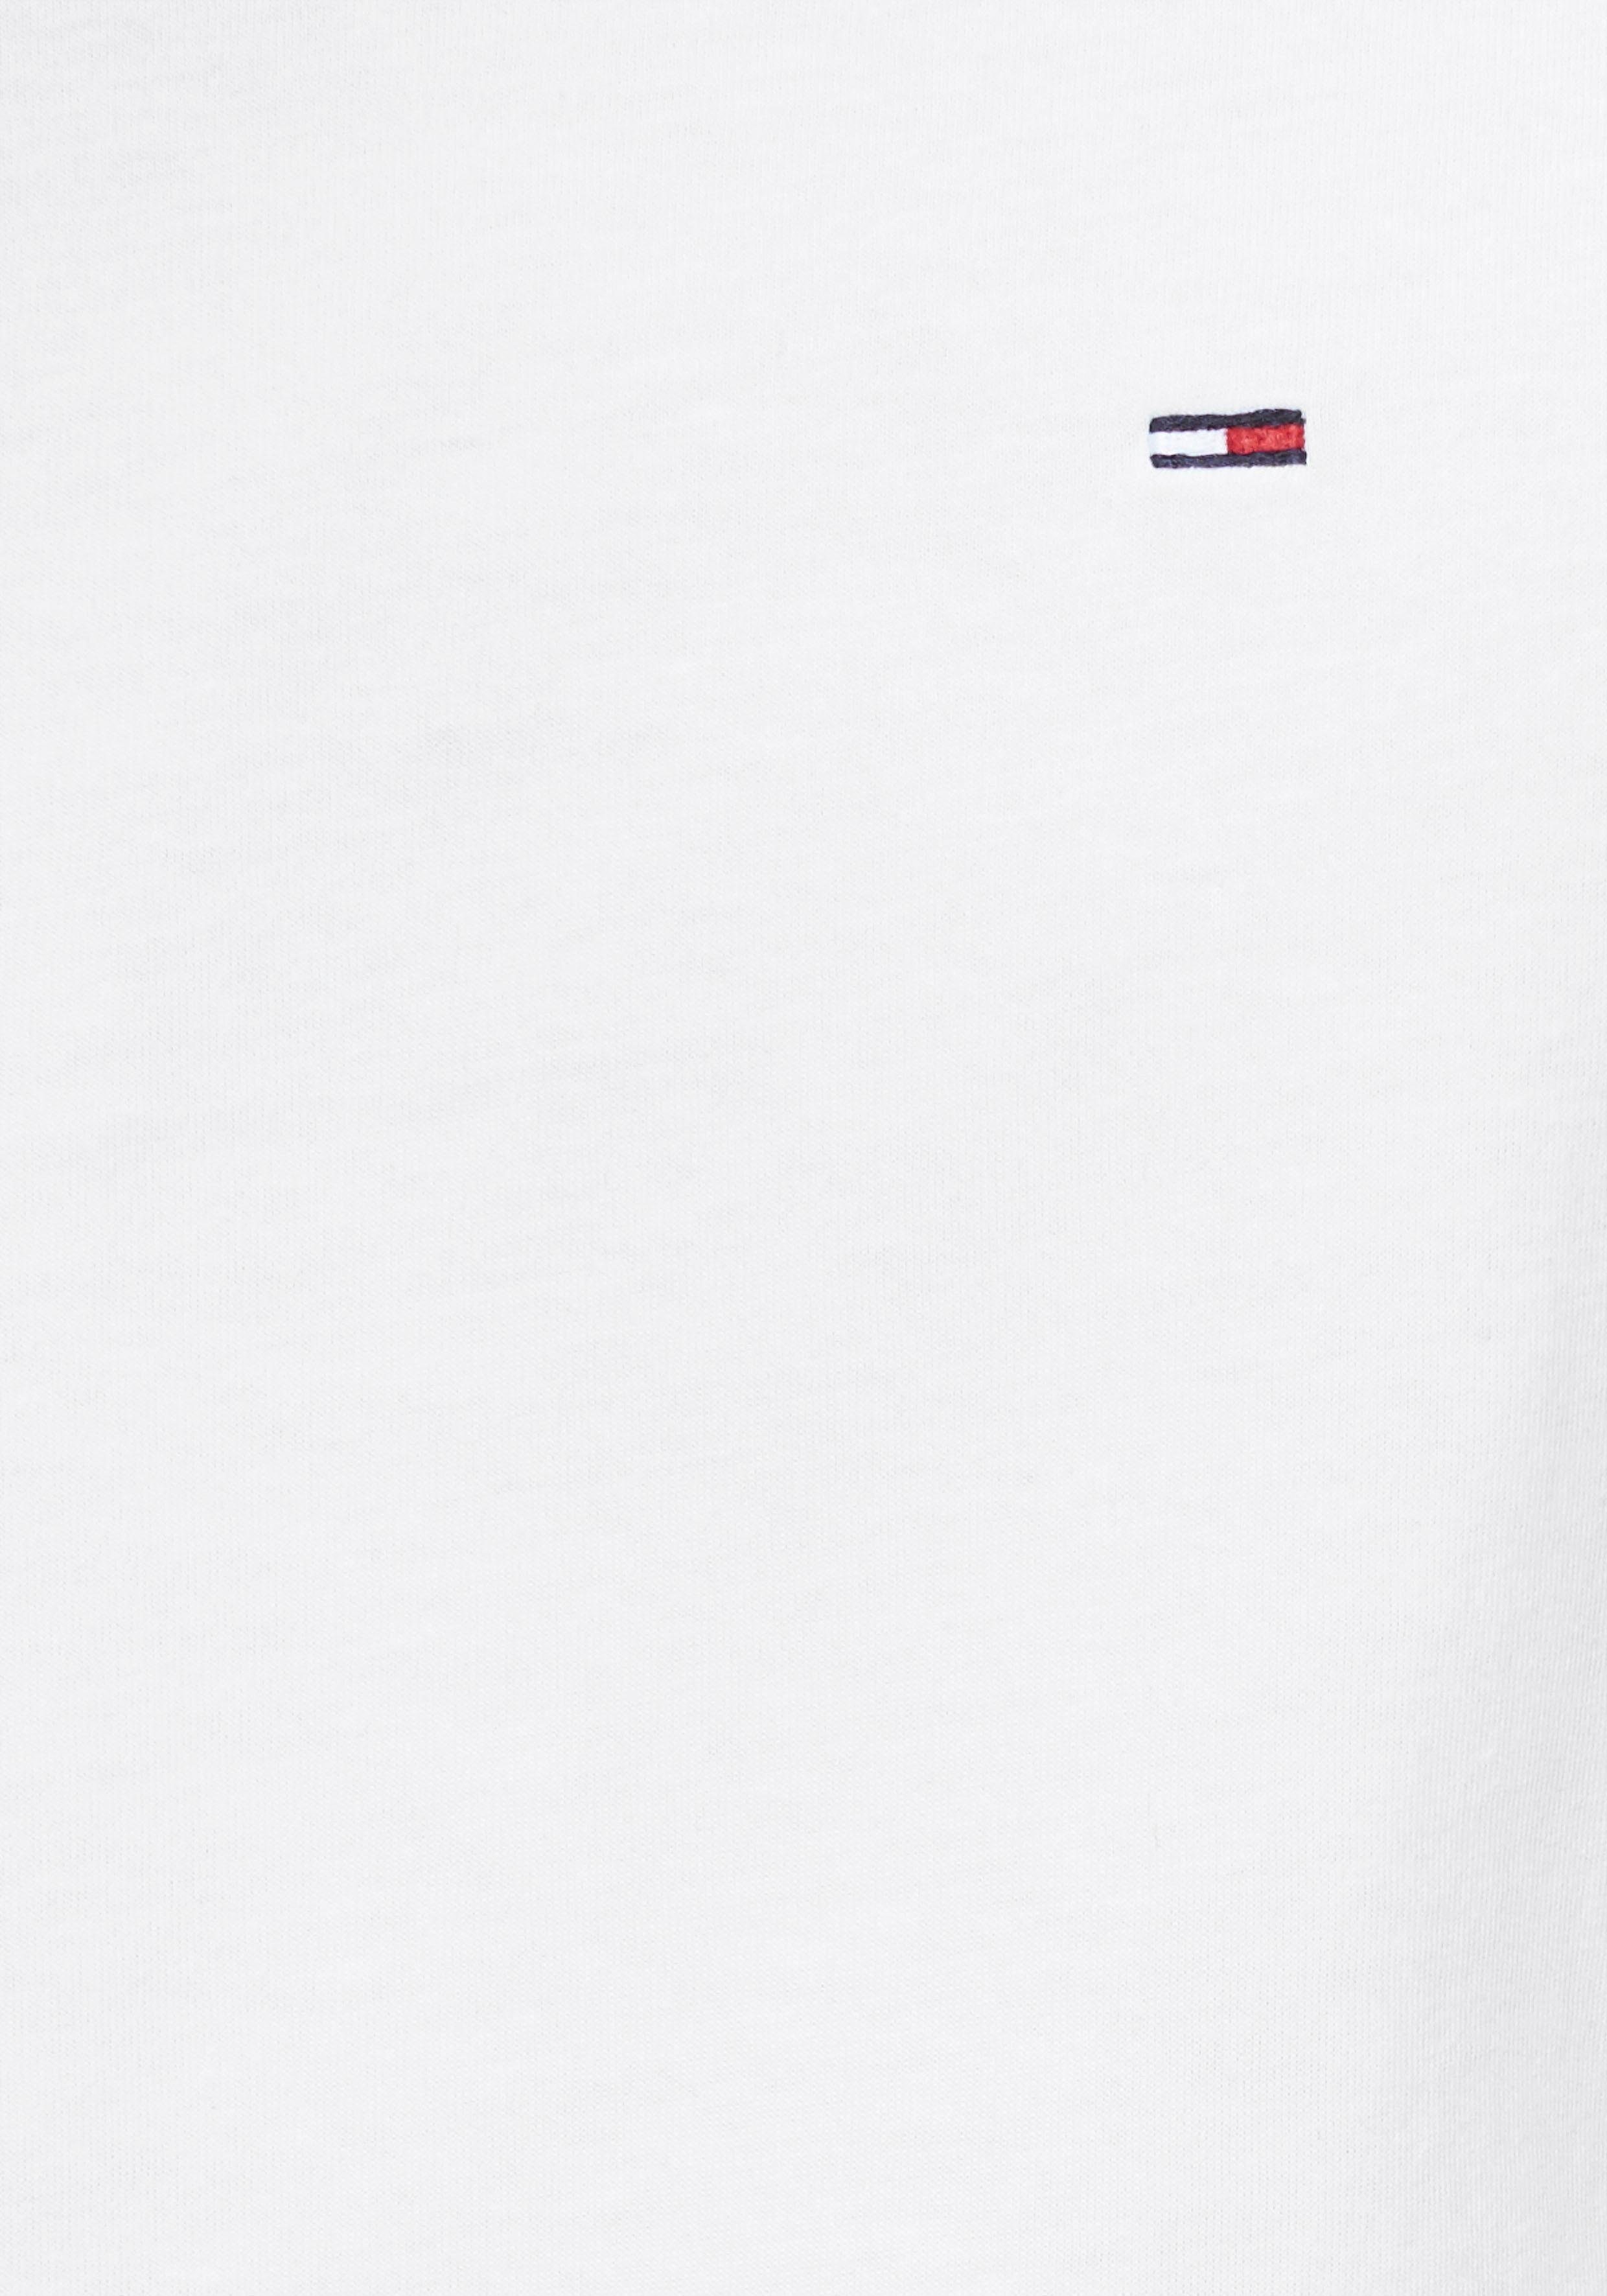 Regular und WHITE Fit Tommy Jeans SOLID TEE Rundhalsausschnitt dezenter ESSENTIAL TJM Logo-Flag T-Shirt mit CLASSIC